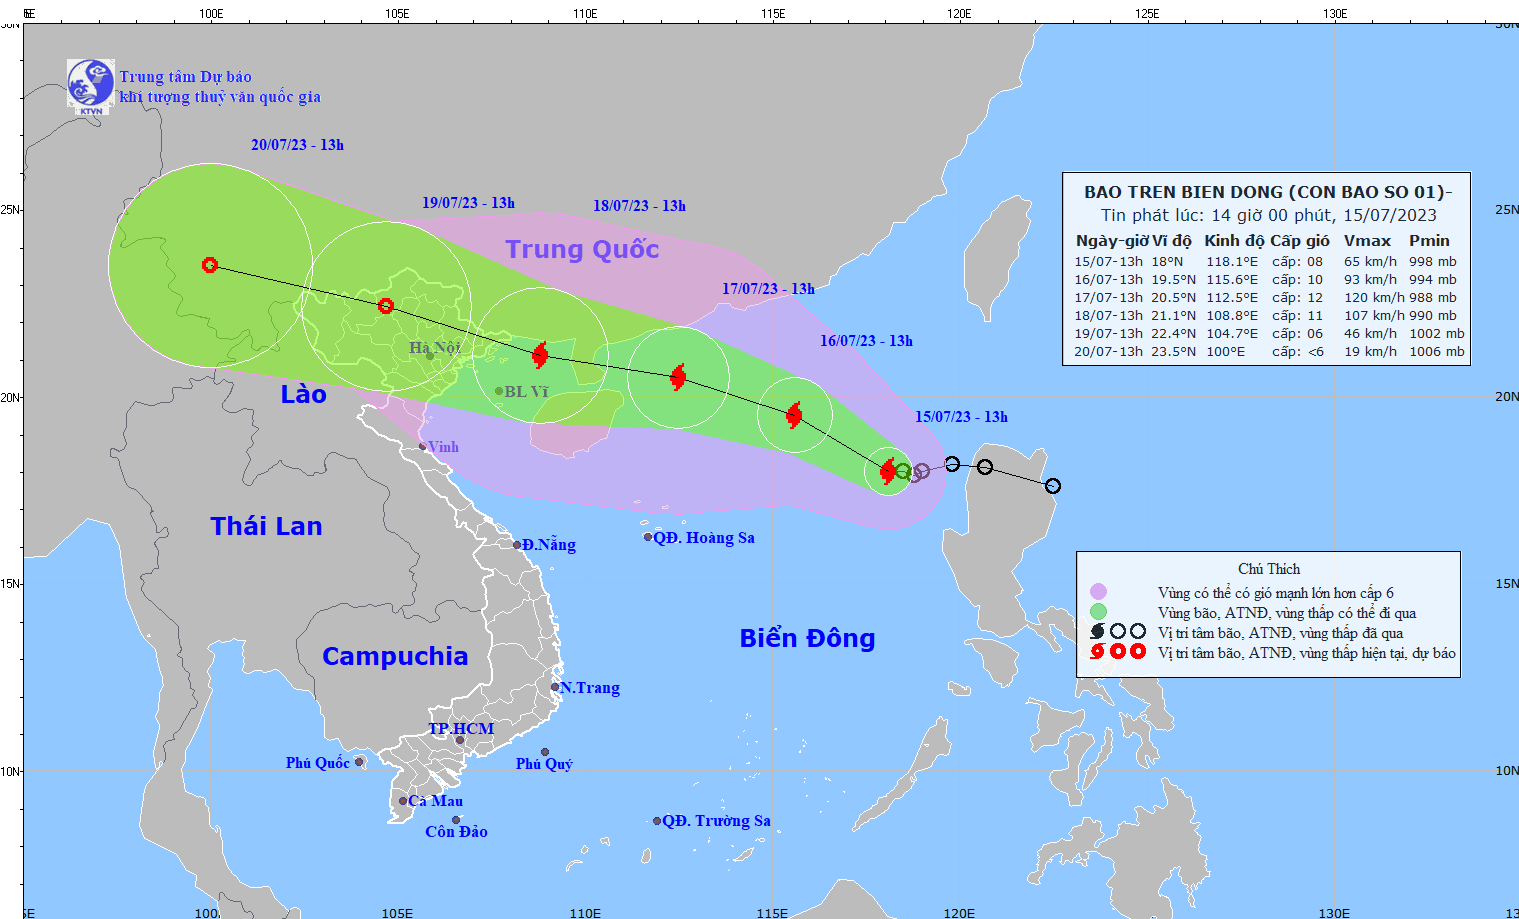 Biển Đông đón bão TALIM rất mạnh, có thể đi thẳng vào miền Bắc - Ảnh 1.